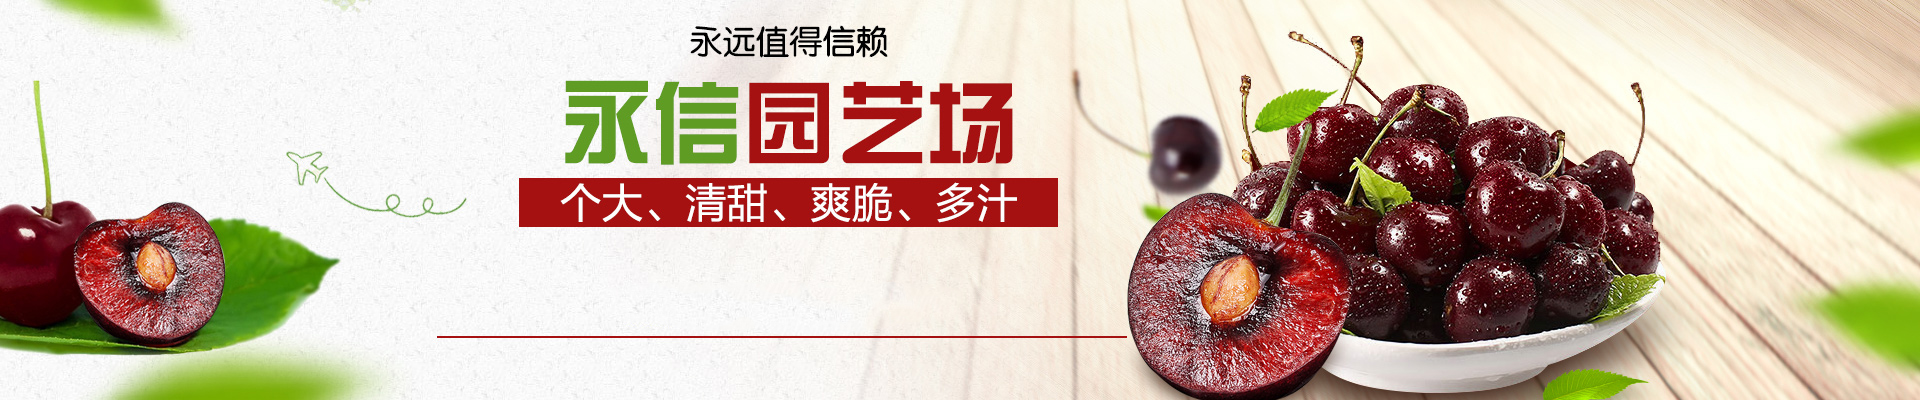 今年新品种宁玉草莓苗报价宁玉草莓苗种植